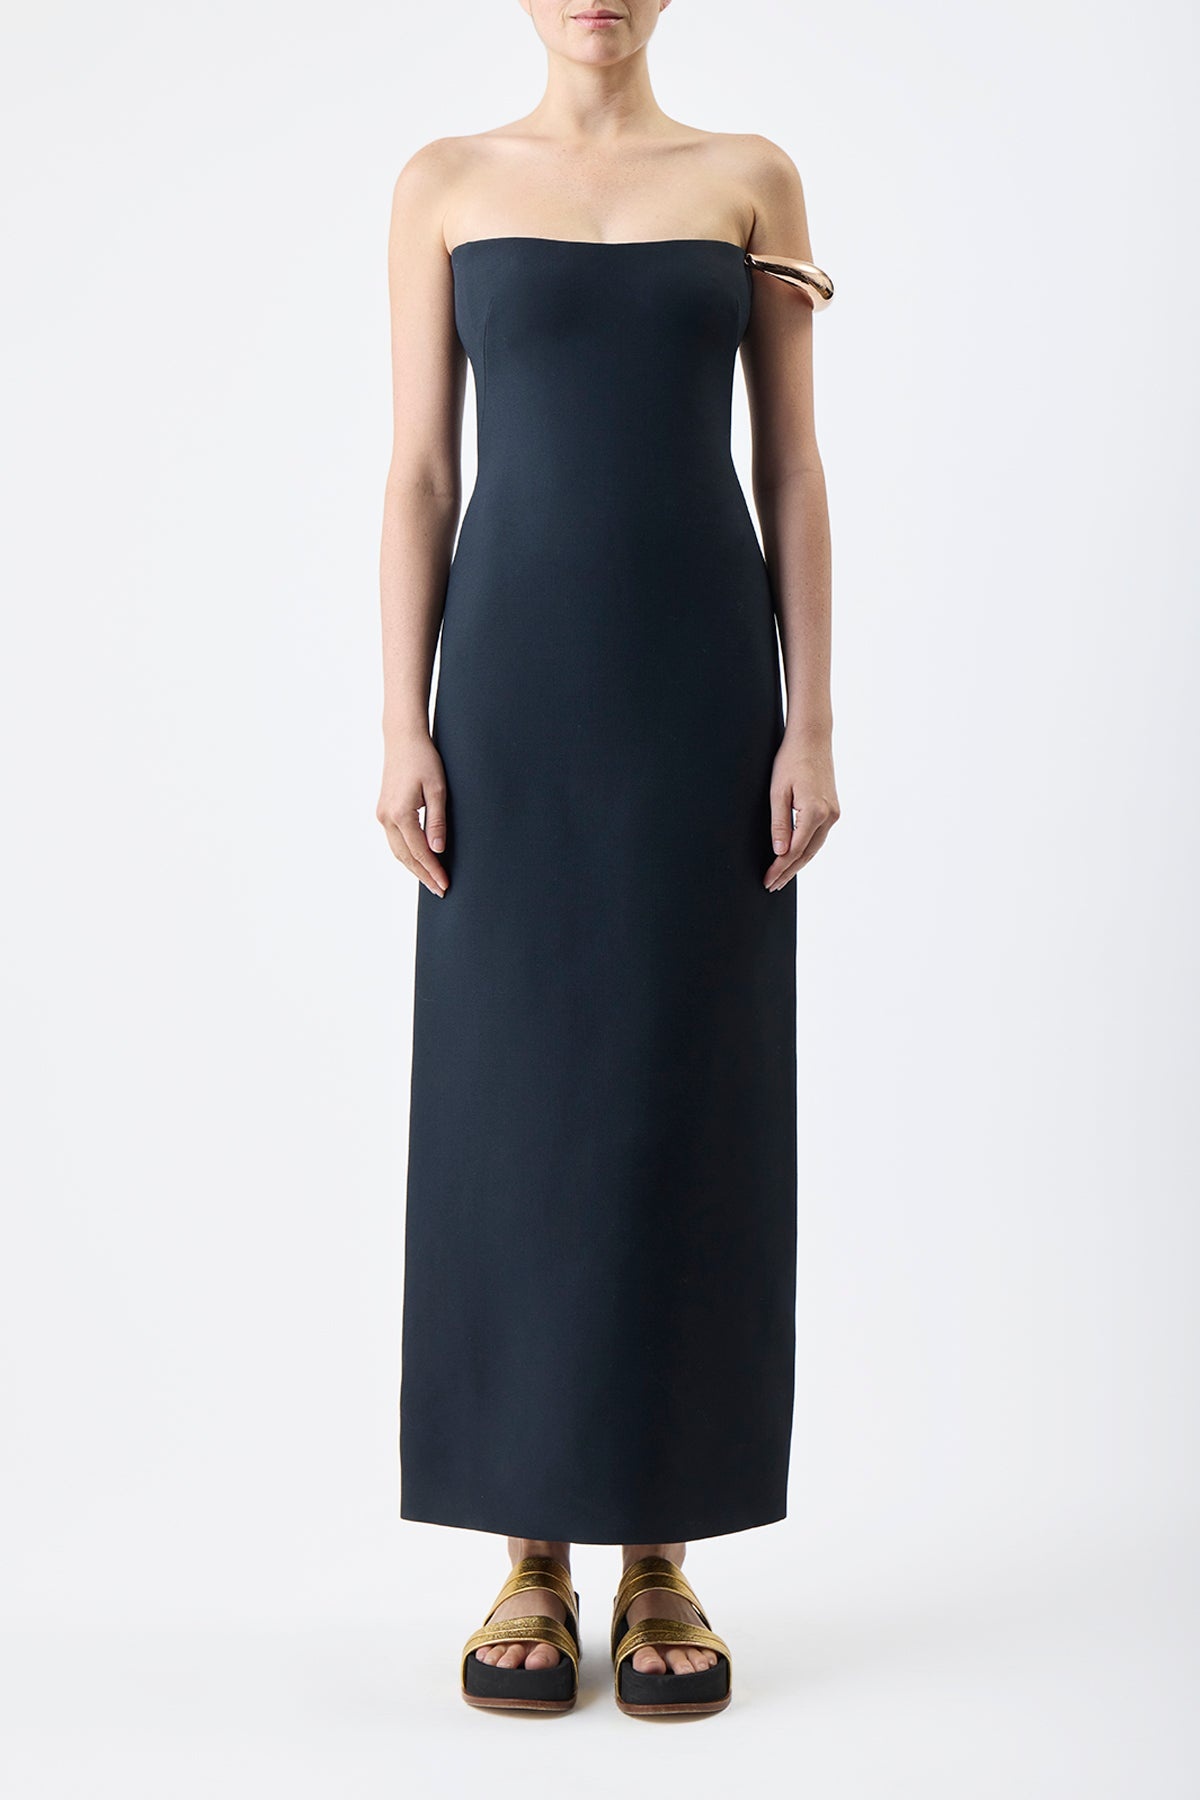 Anica Dress in Black Silk Wool Cady - 3